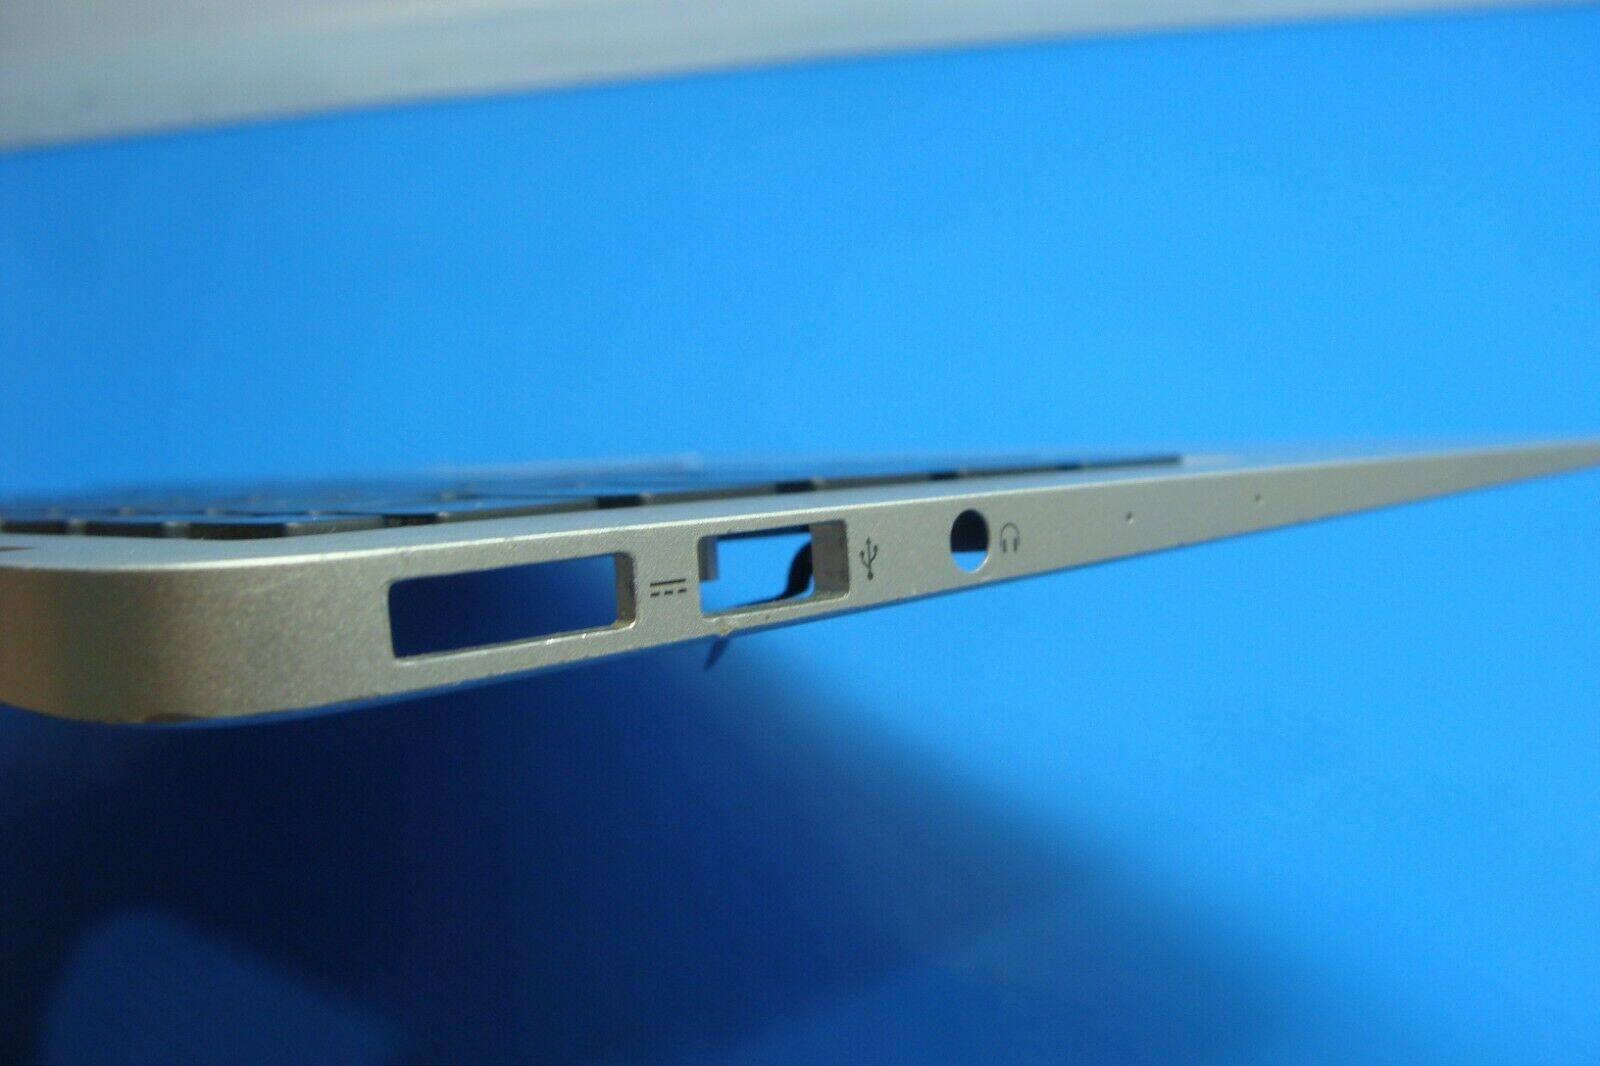 MacBook Air A1466 MD761LL/A Mid 2013 13